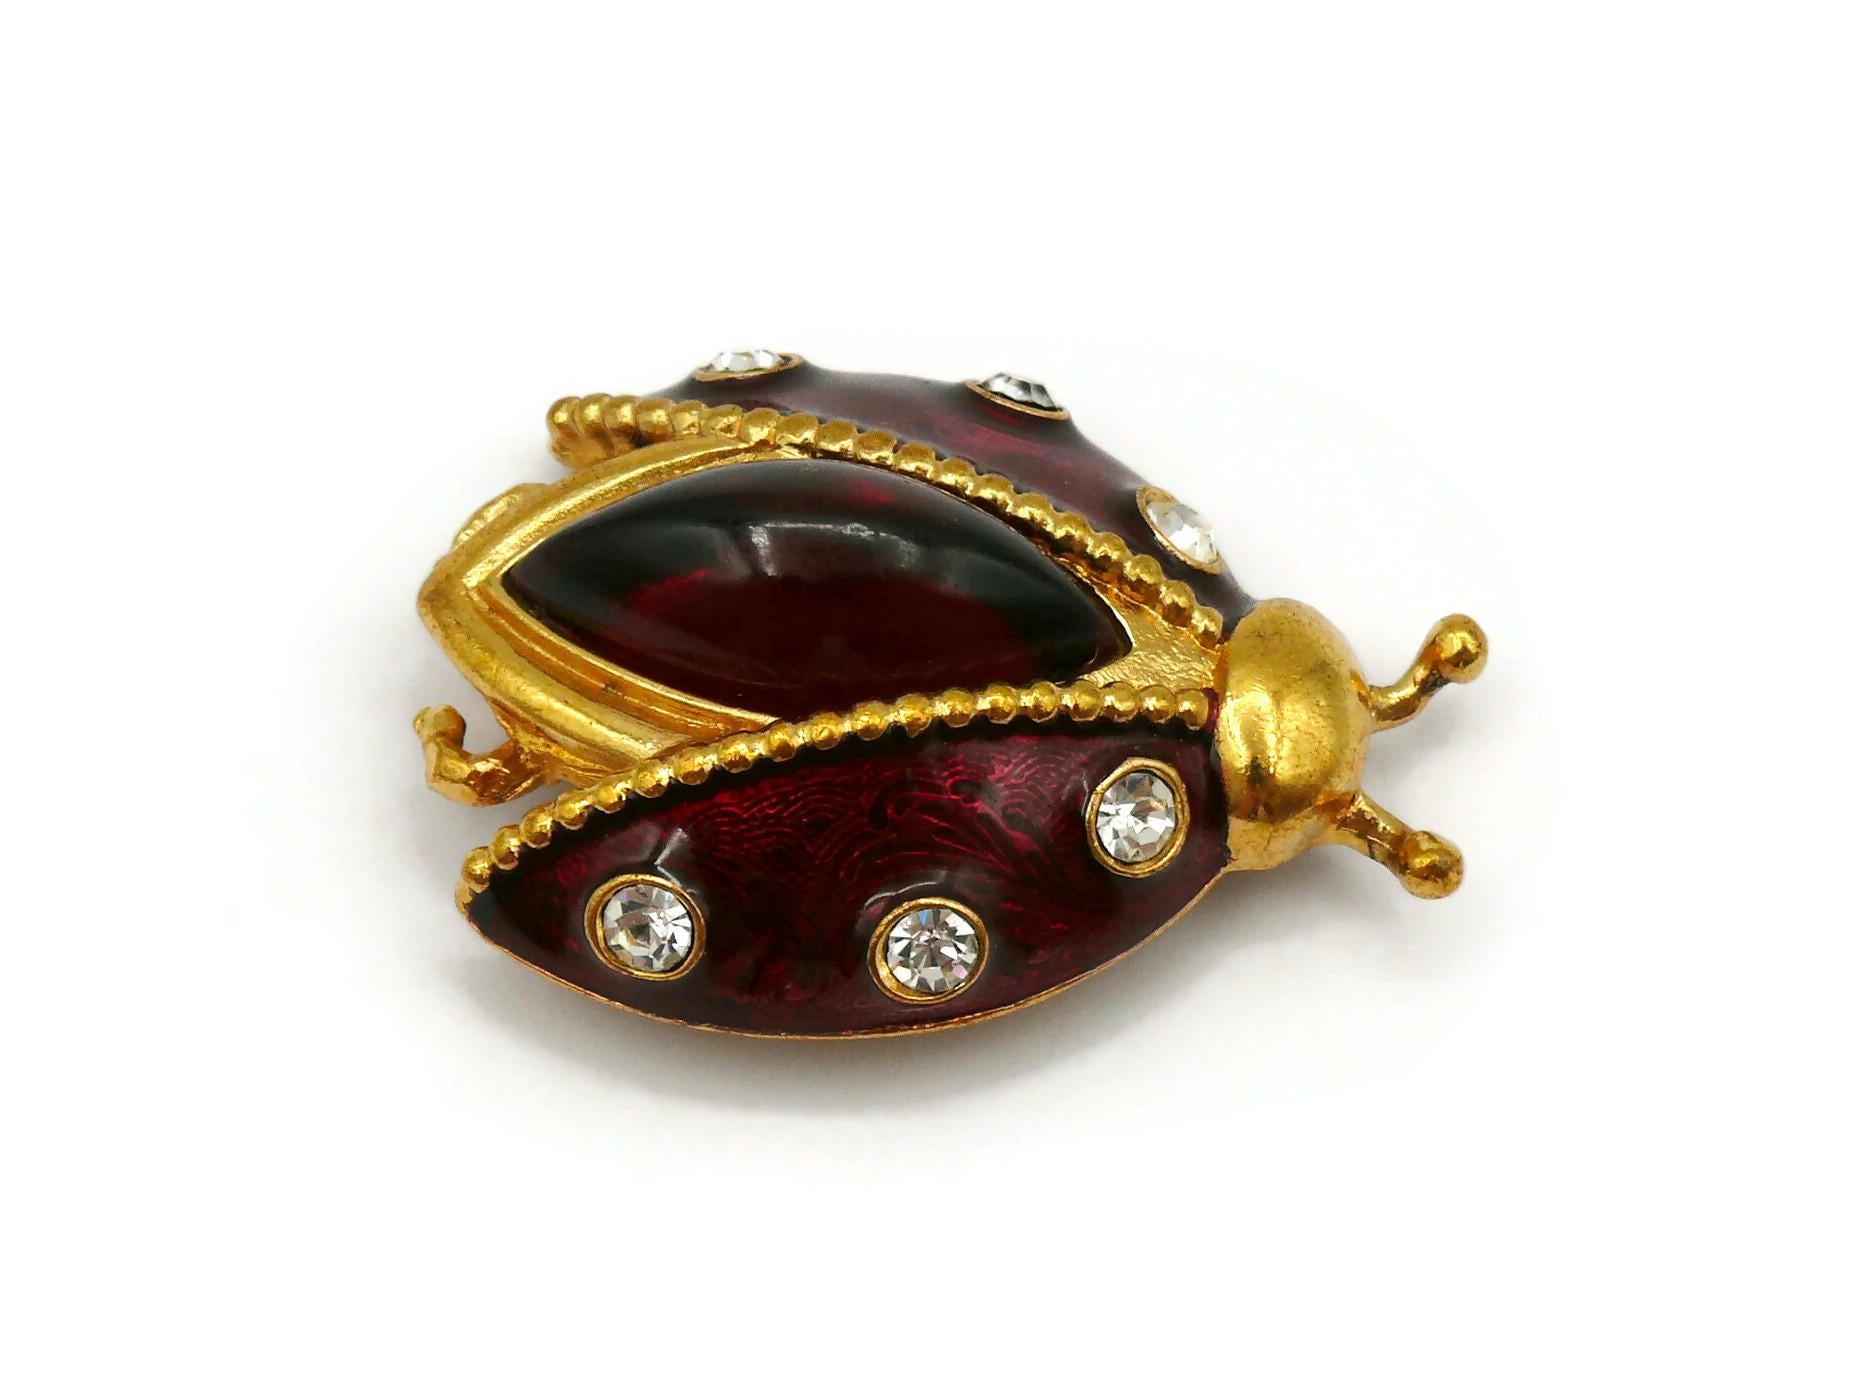 CHRISTIAN DIOR Vintage Jewelled Ladybug Brooch For Sale 1